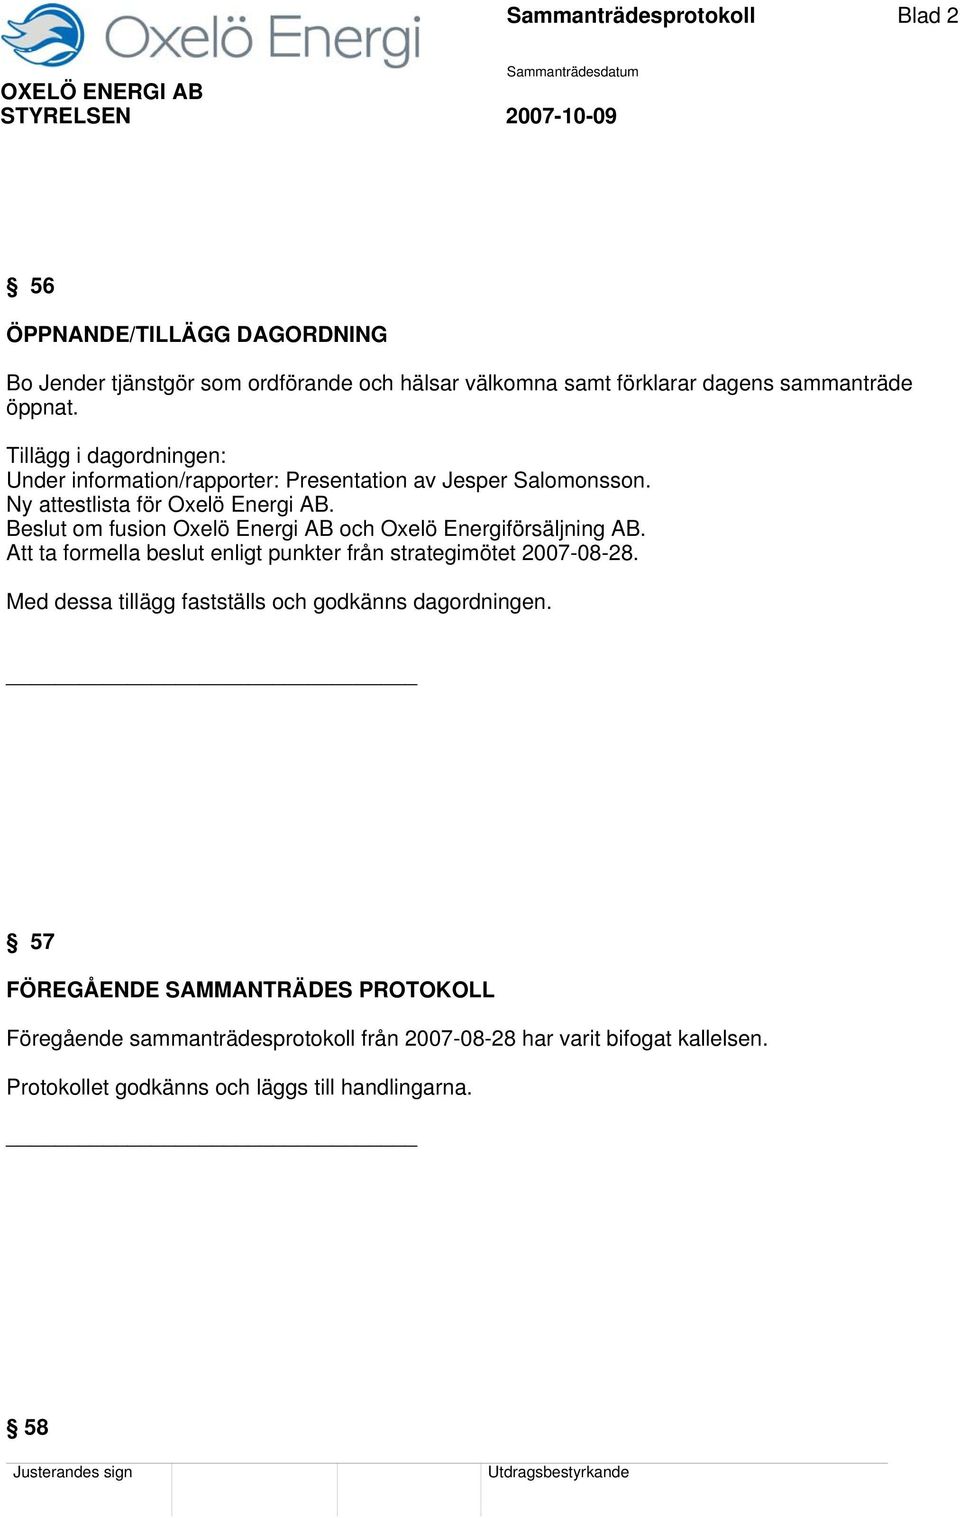 Beslut om fusion Oxelö Energi AB och Oxelö Energiförsäljning AB. Att ta formella beslut enligt punkter från strategimötet 2007-08-28.